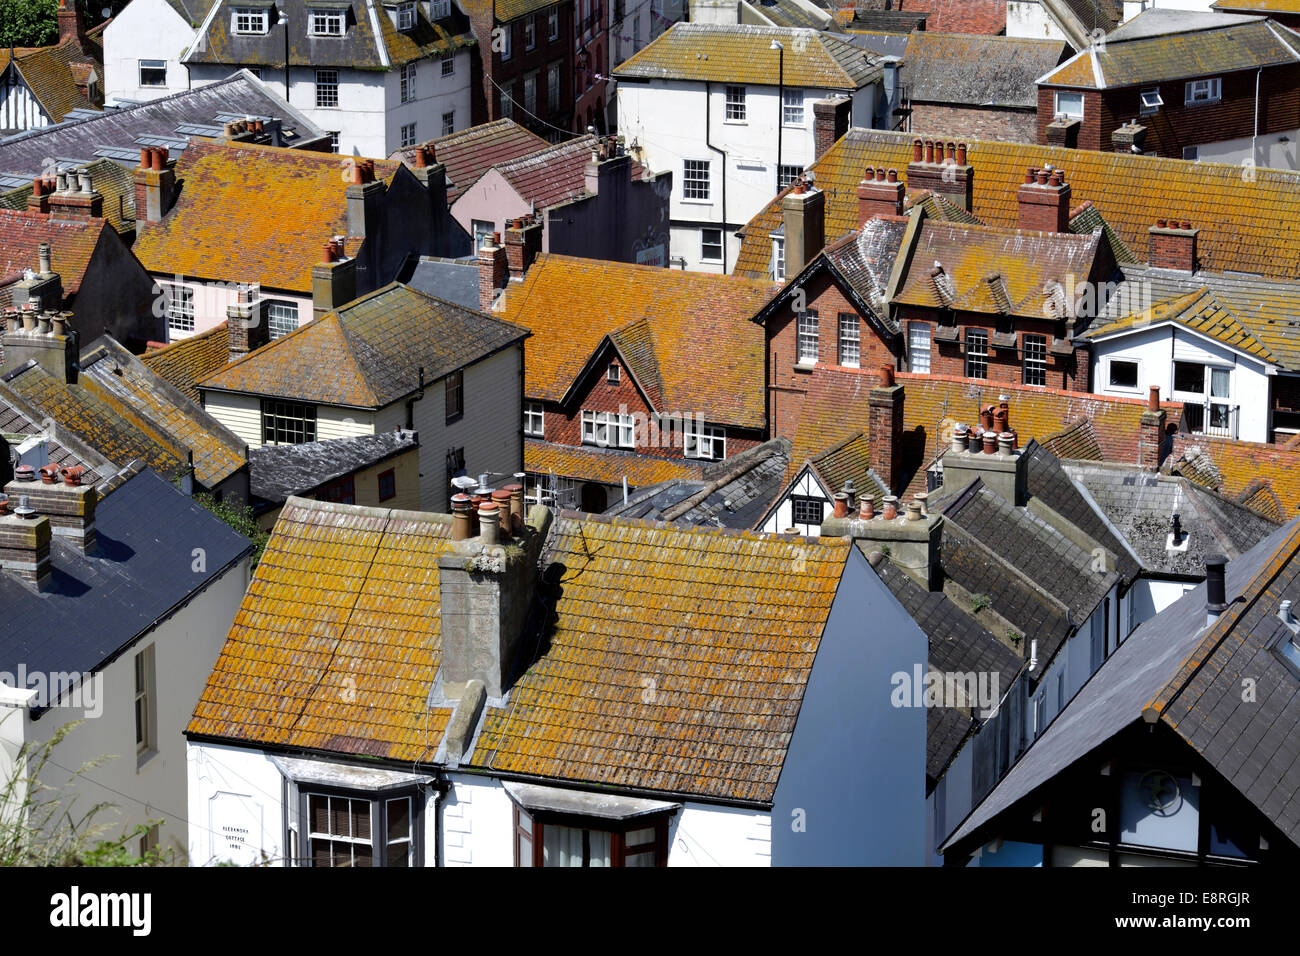 Flechten wachsen auf Dachziegeln drehen Hausdächer eine untypische glühende gelbbrauner Farbe. Hastings Altstadt, East Sussex. Stockfoto